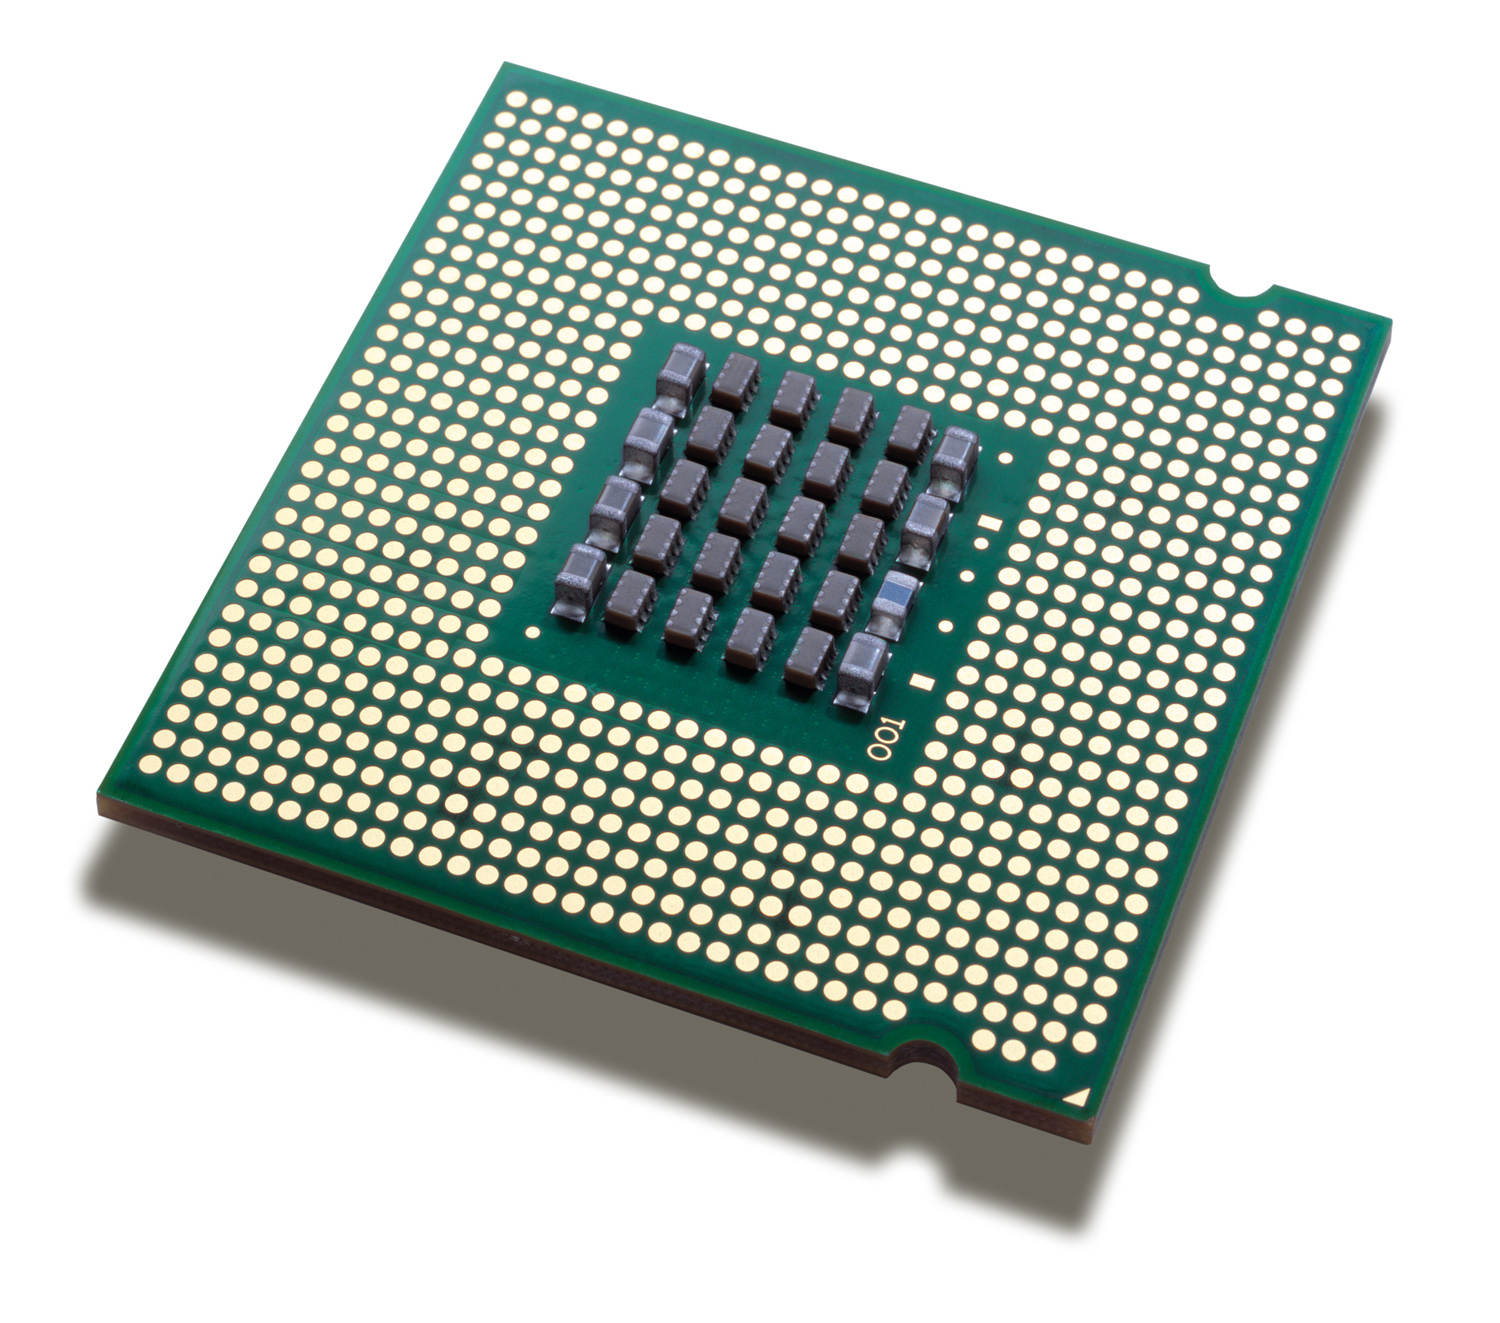 Fungsi CPU Komputer Sebagai Salah Satu Komponen Komputer 